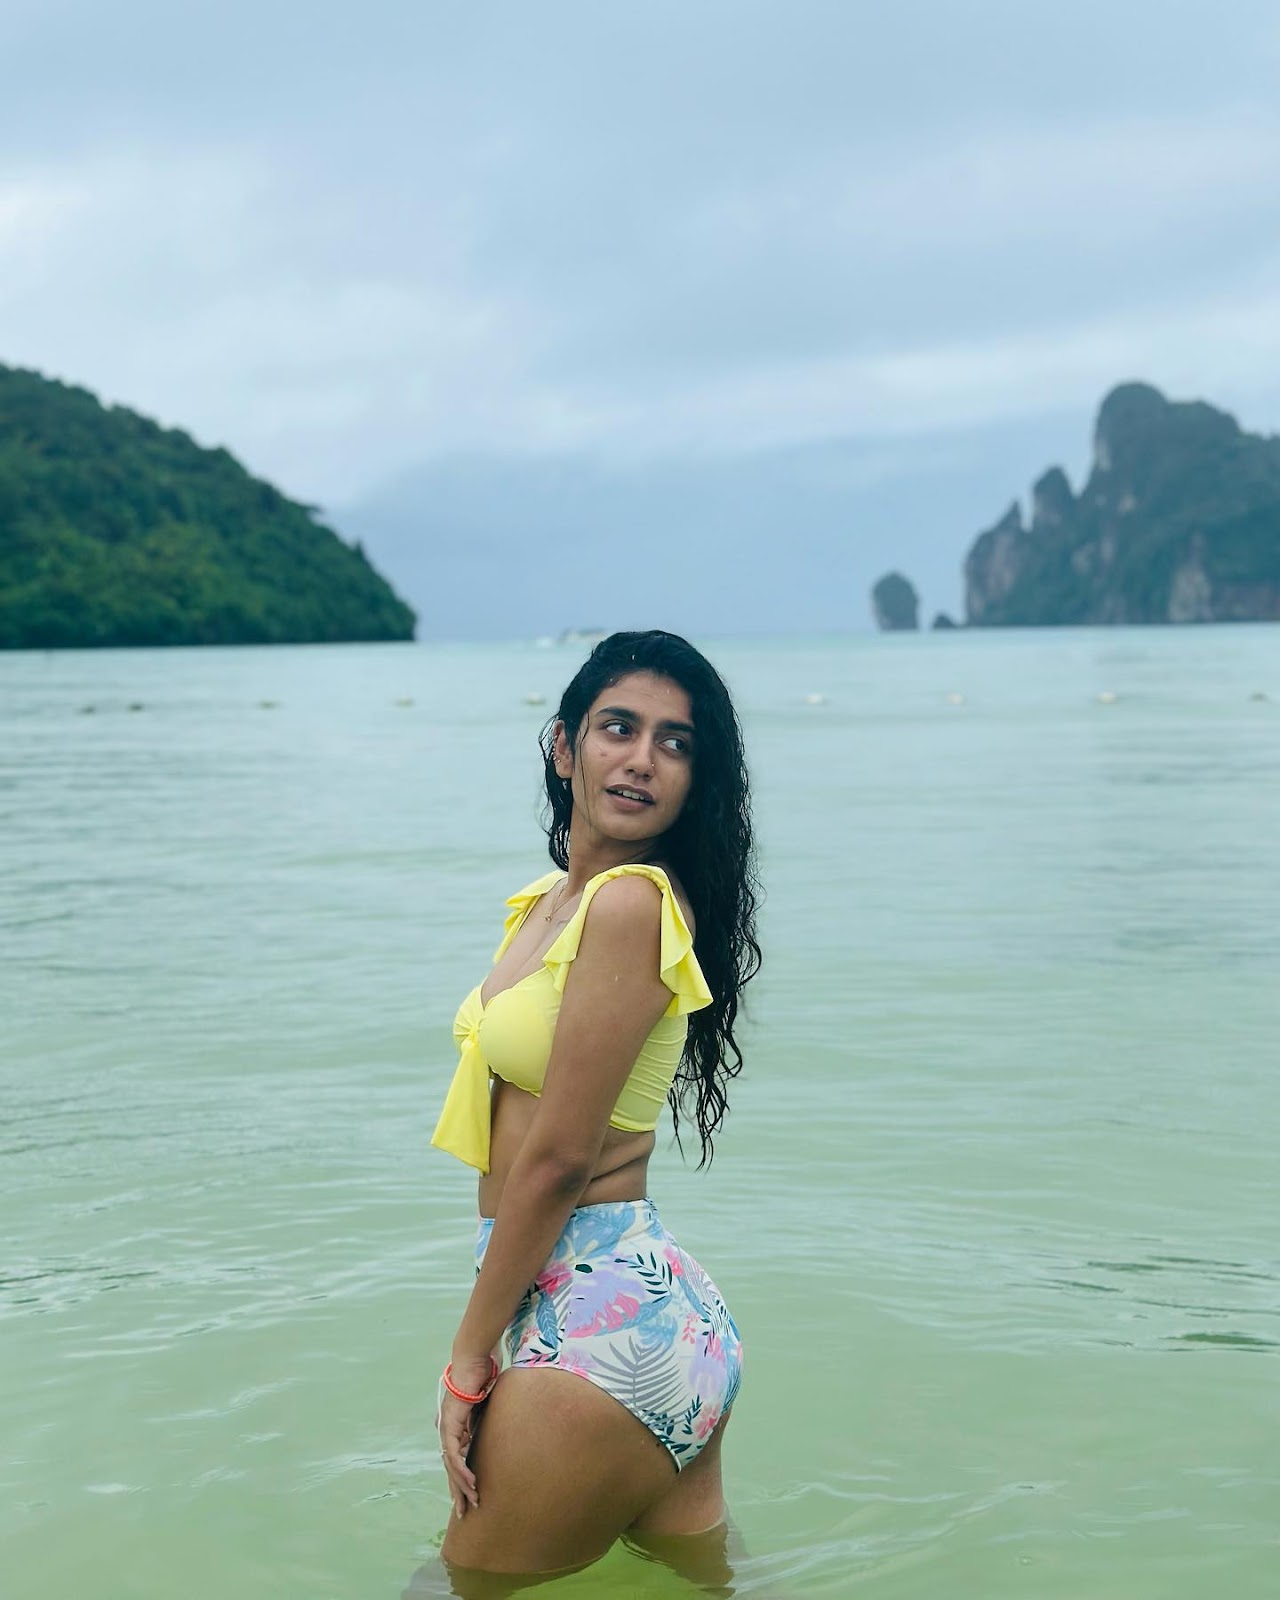 Priya Prakash Varrier in swimsuit is too hot to handle - see photos.